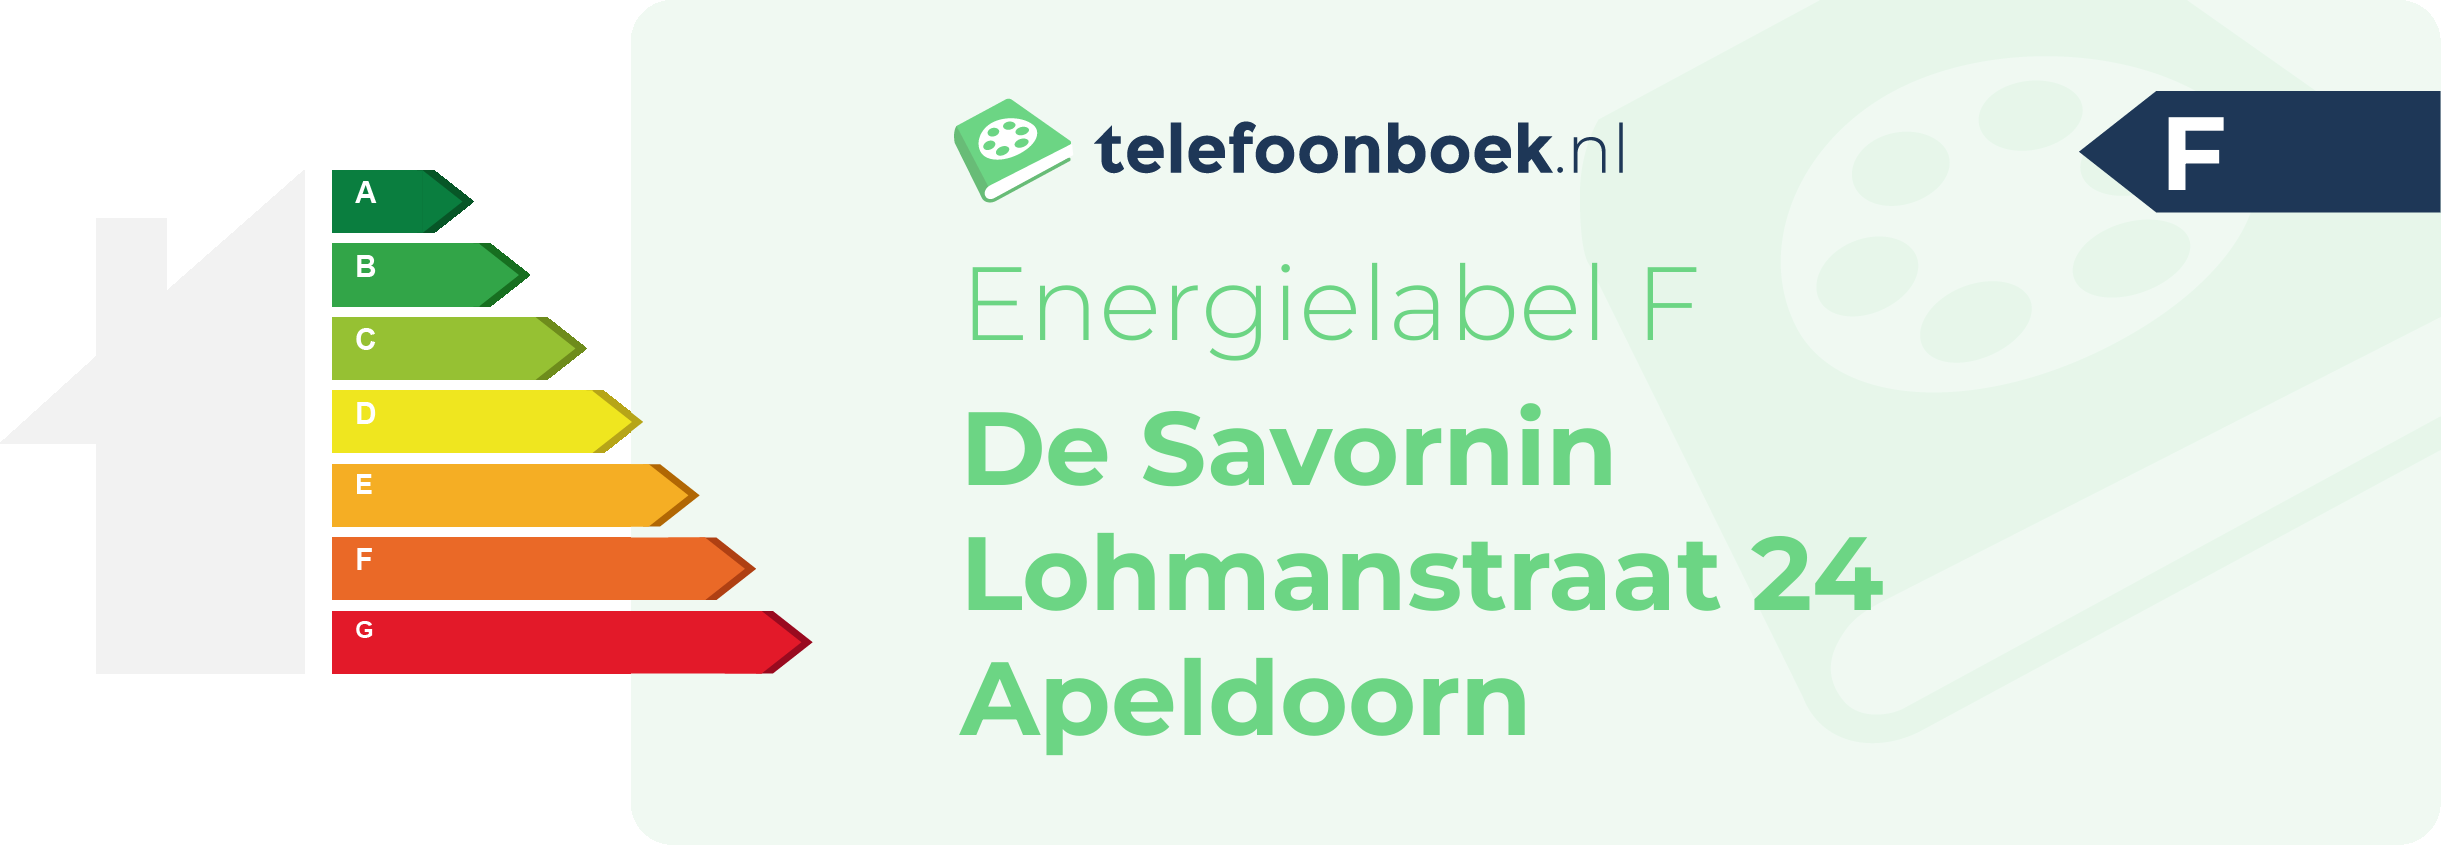 Energielabel De Savornin Lohmanstraat 24 Apeldoorn